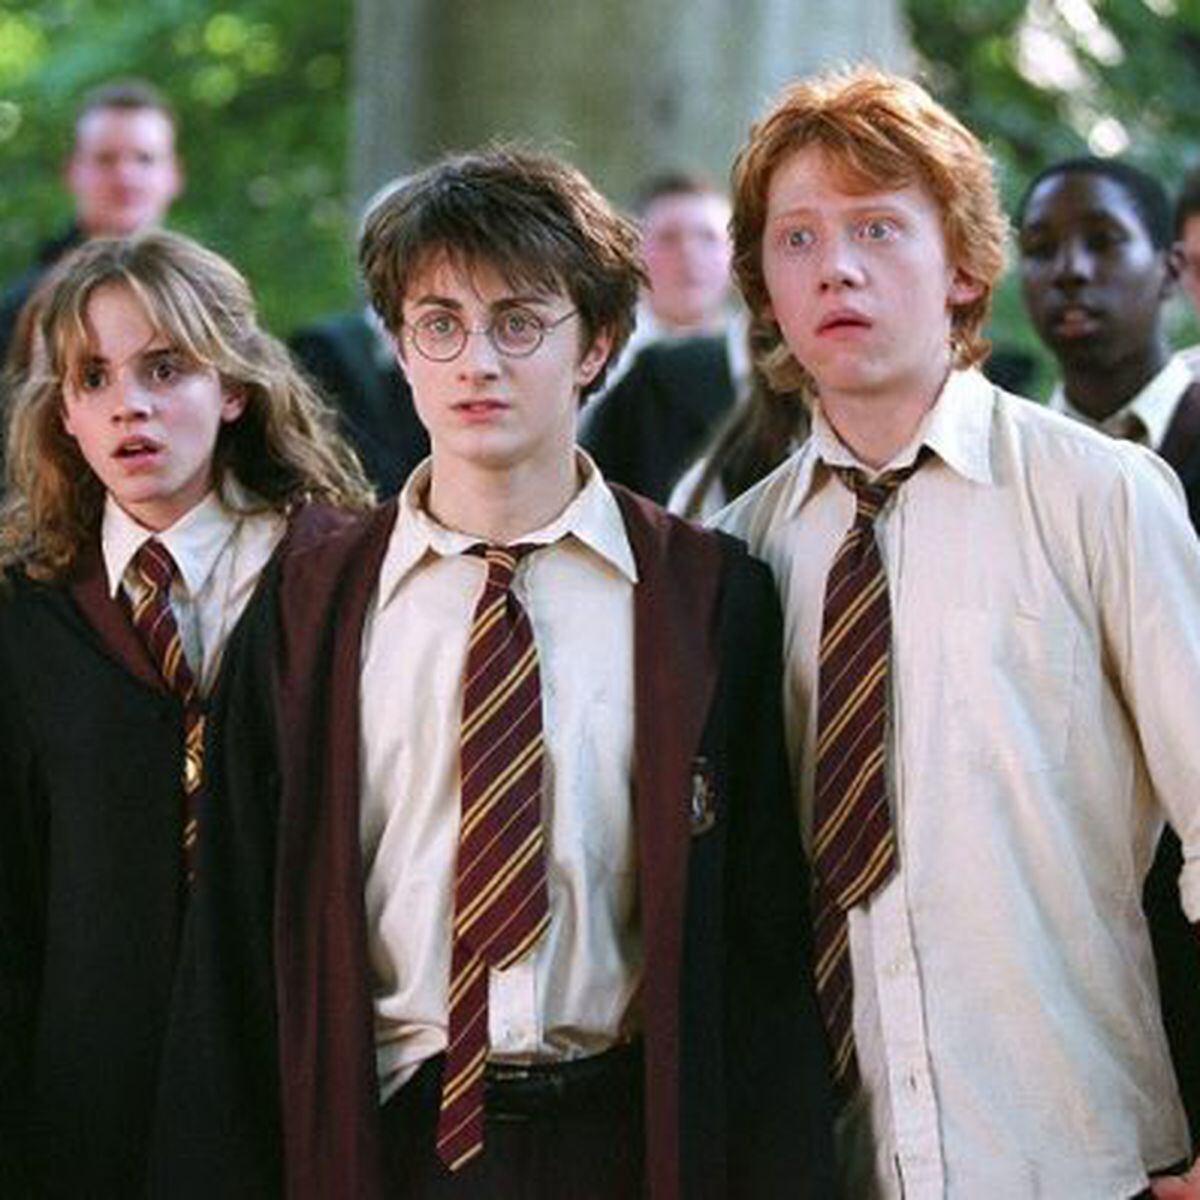 Harry Potter' terá série de sete temporadas produzida pela HBO Max, diz  site - Estadão